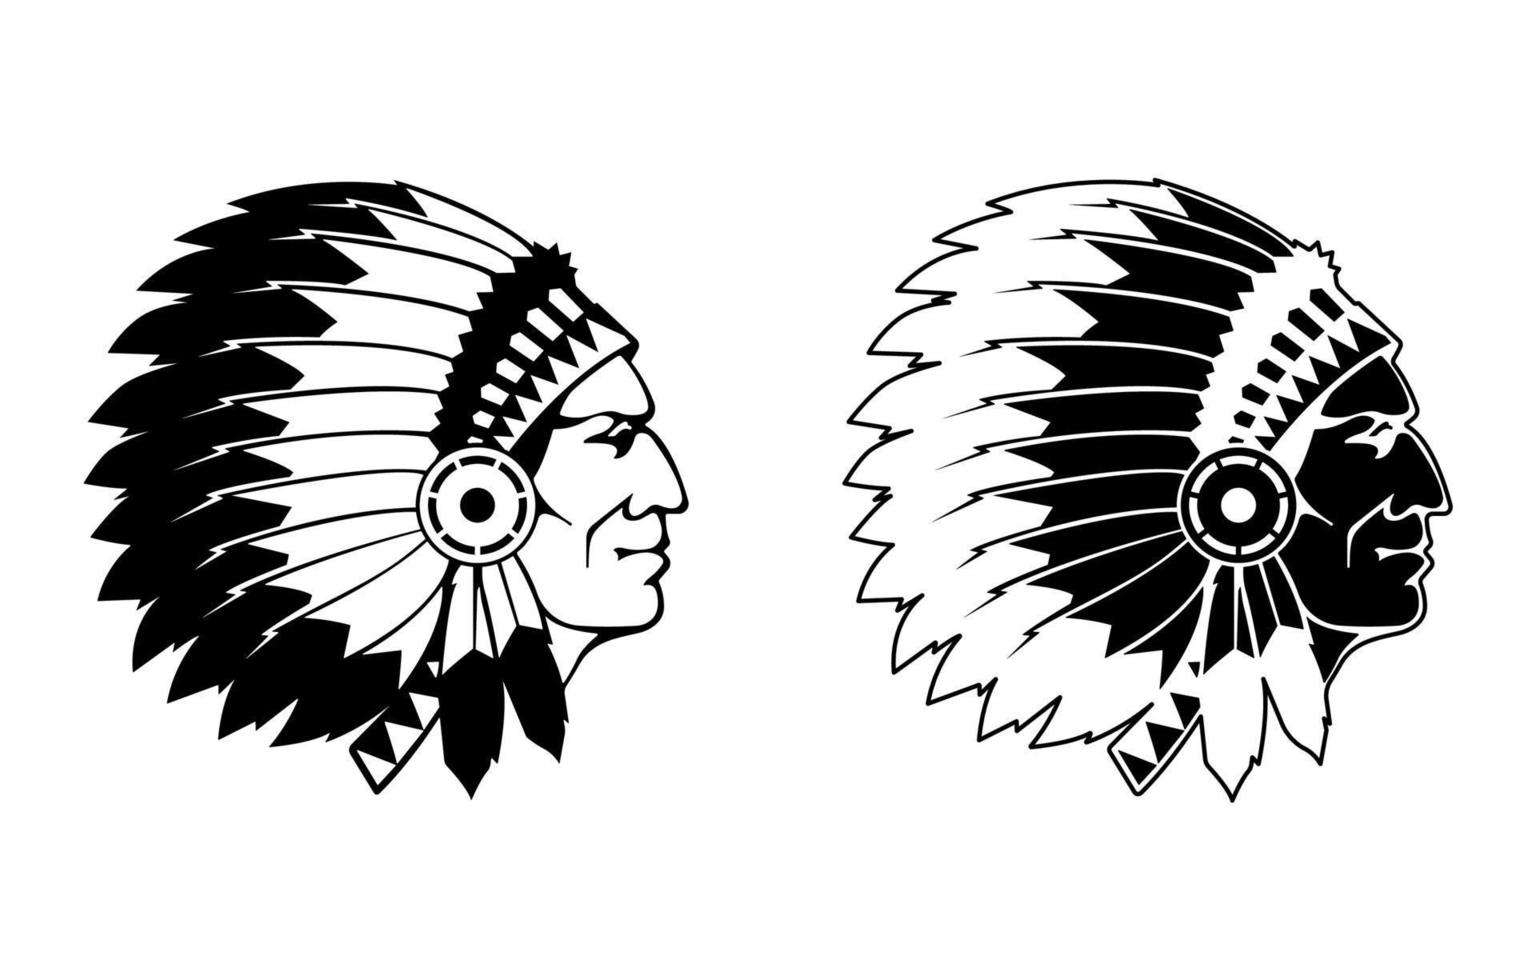 cara de jefe nativo americano, ilustración de silueta de cabeza de apache indio americano. vector